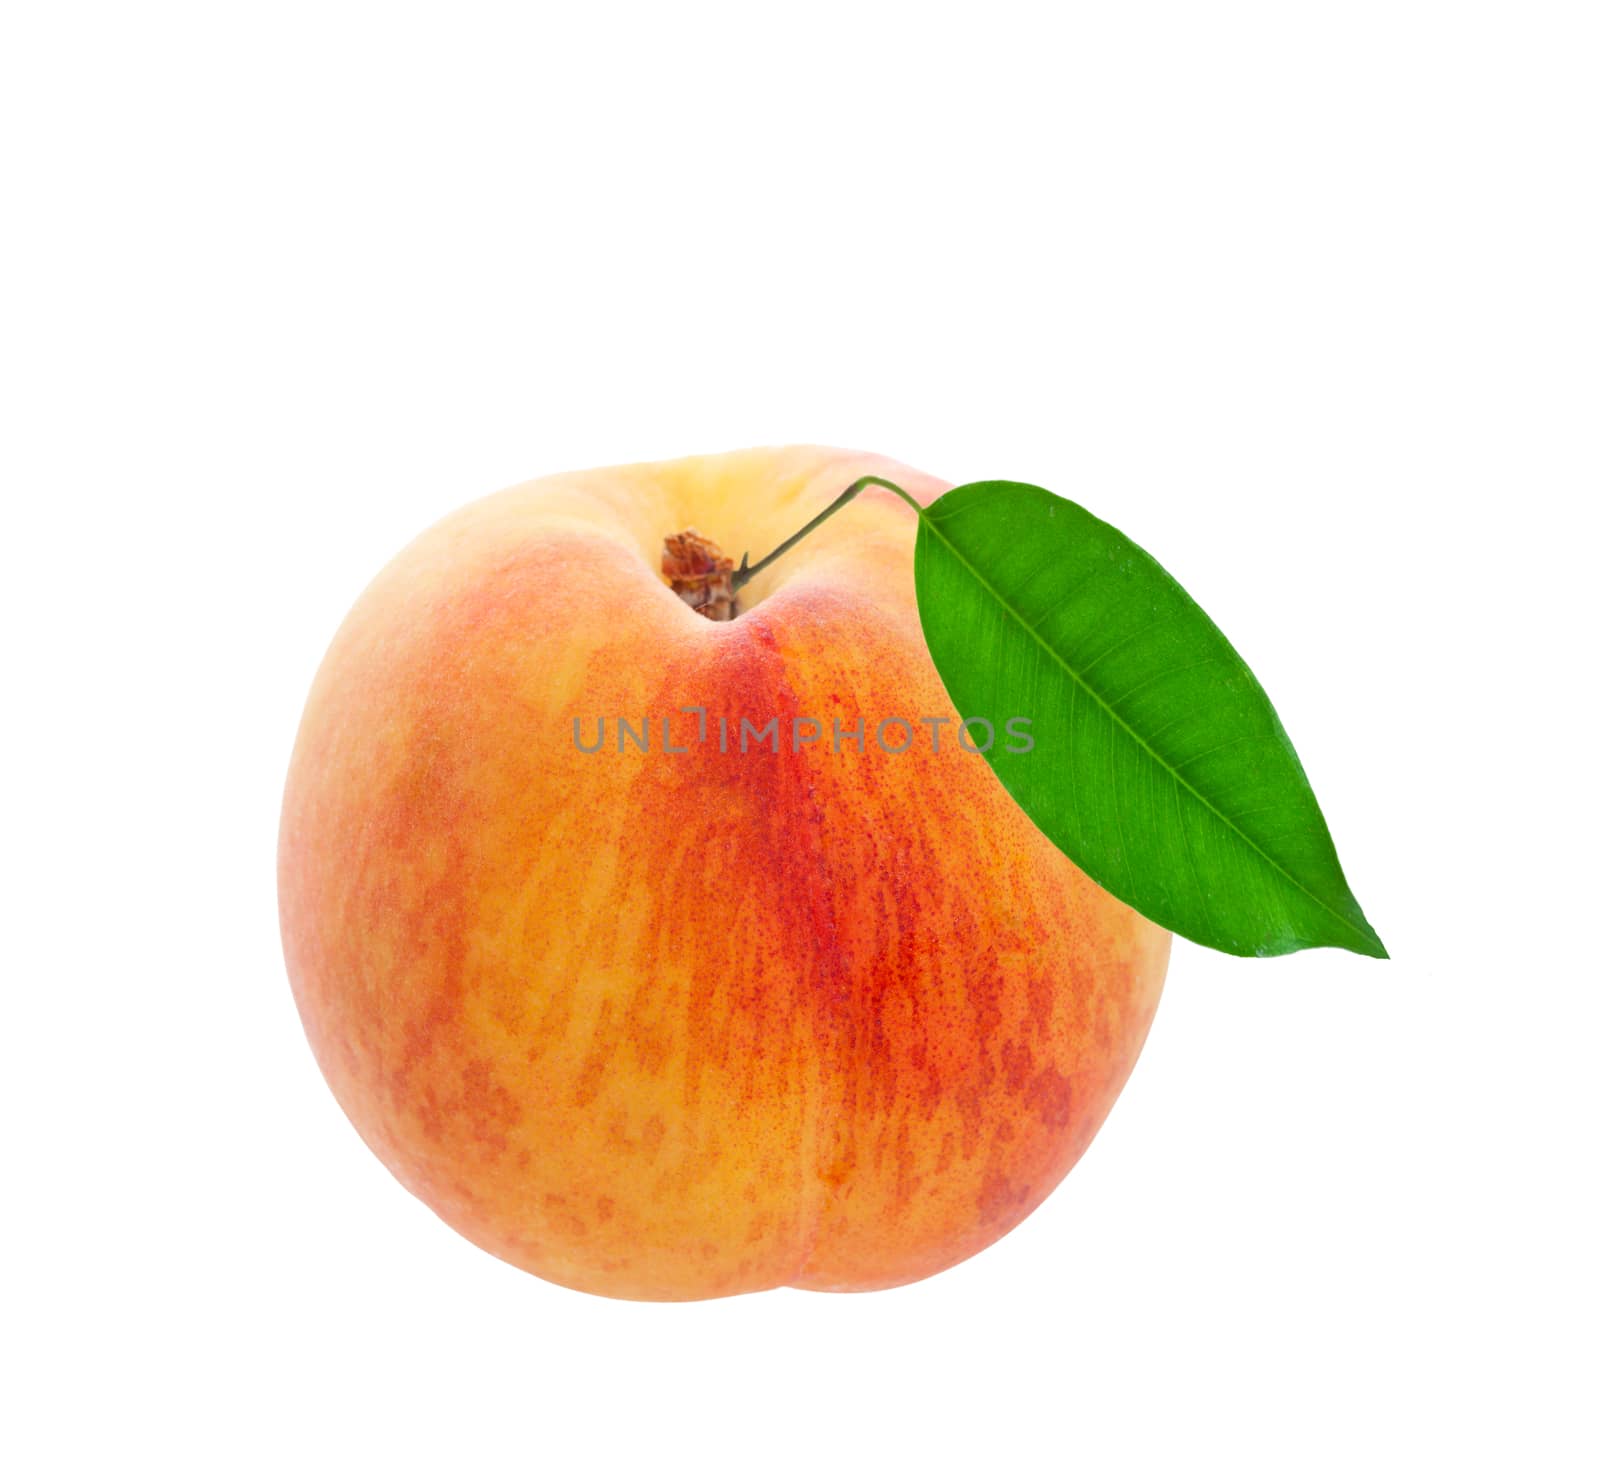 Fresh Peach by songbird839